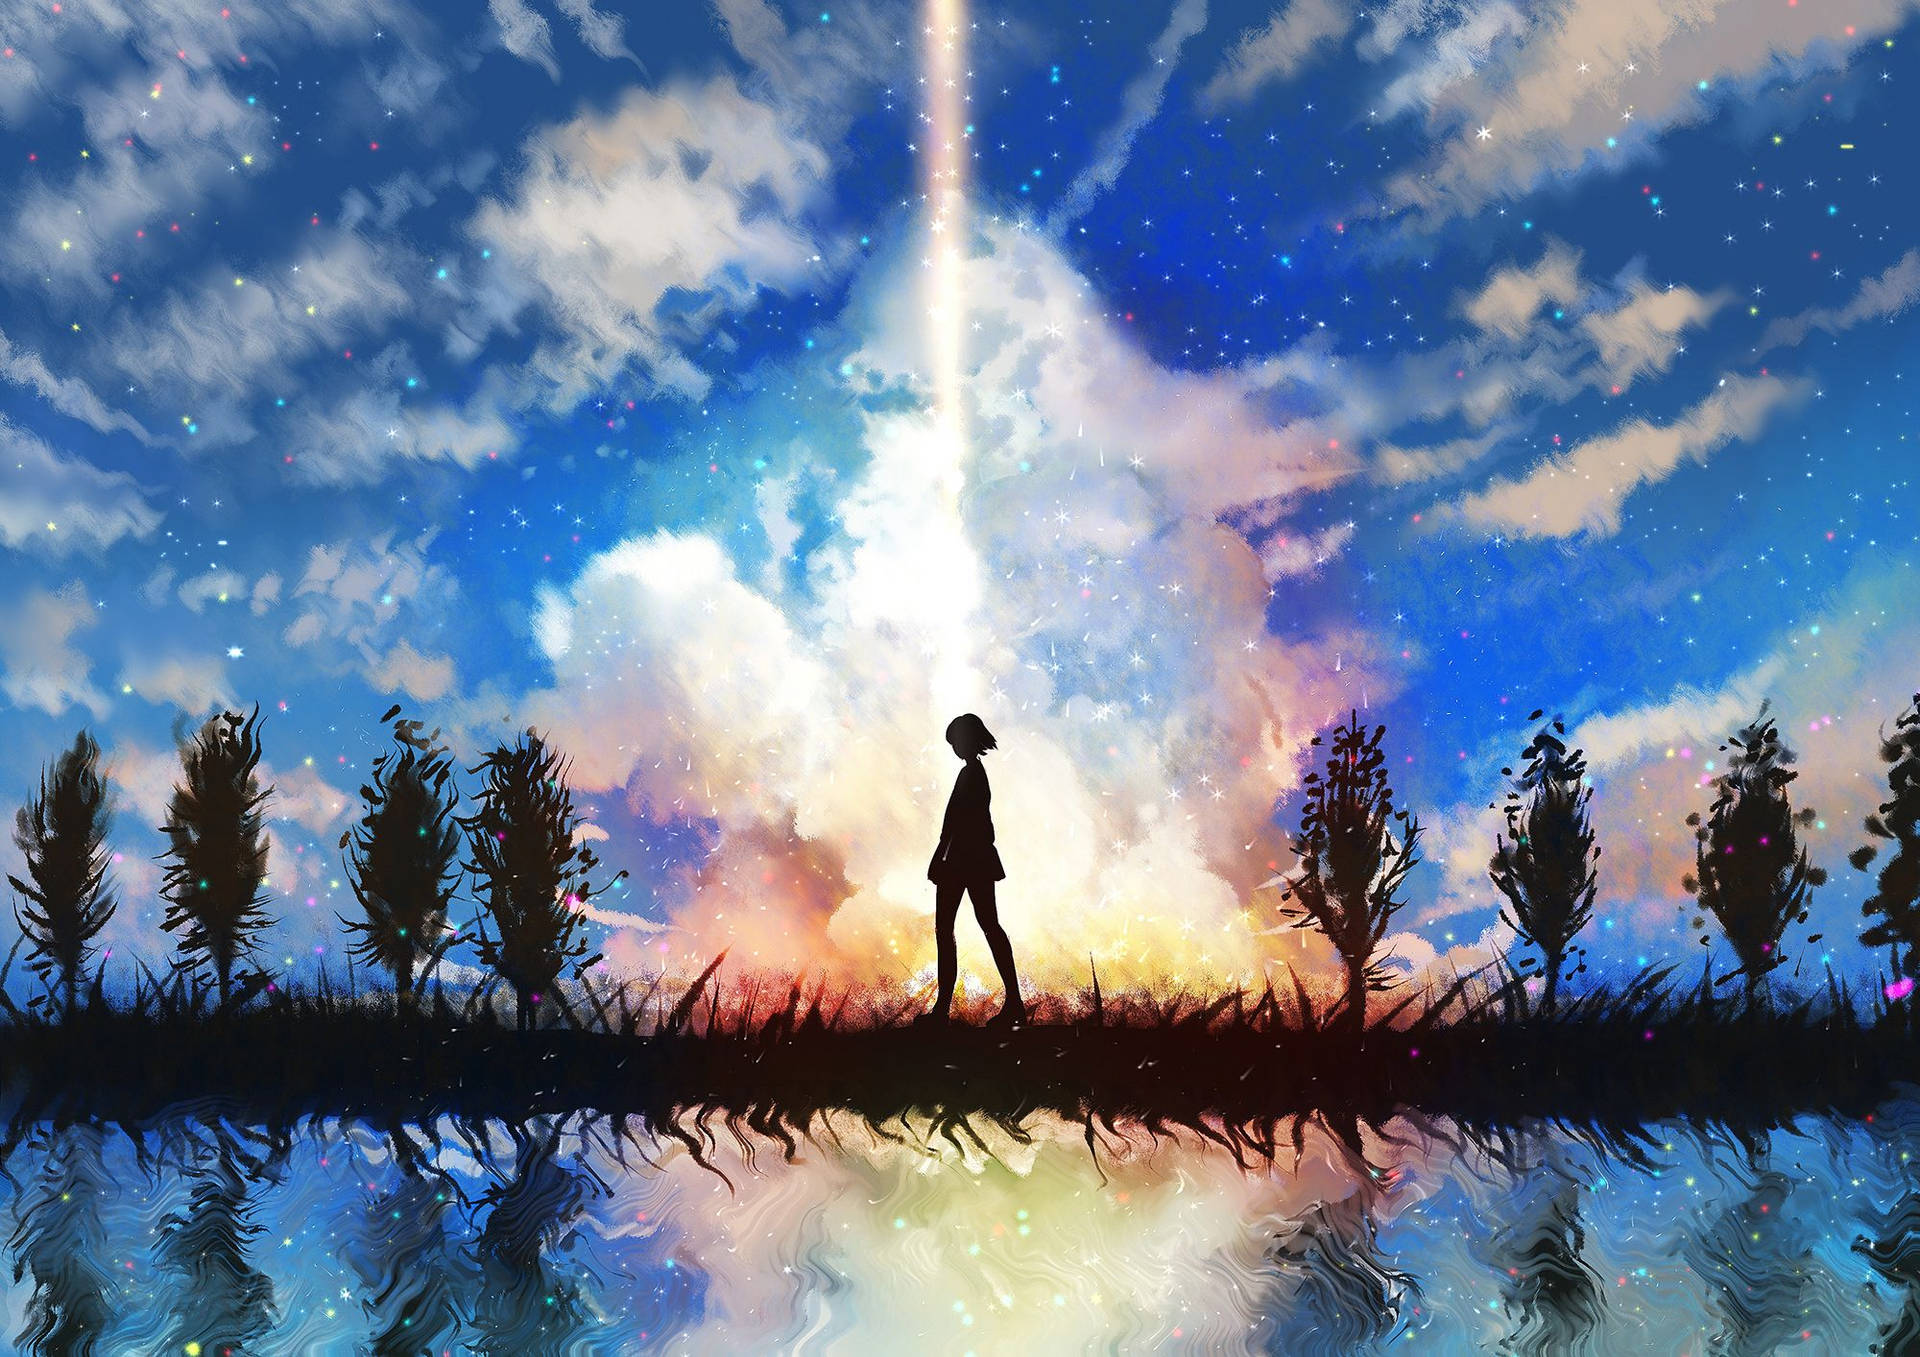 Anime Landscape Sky Of Stars Background